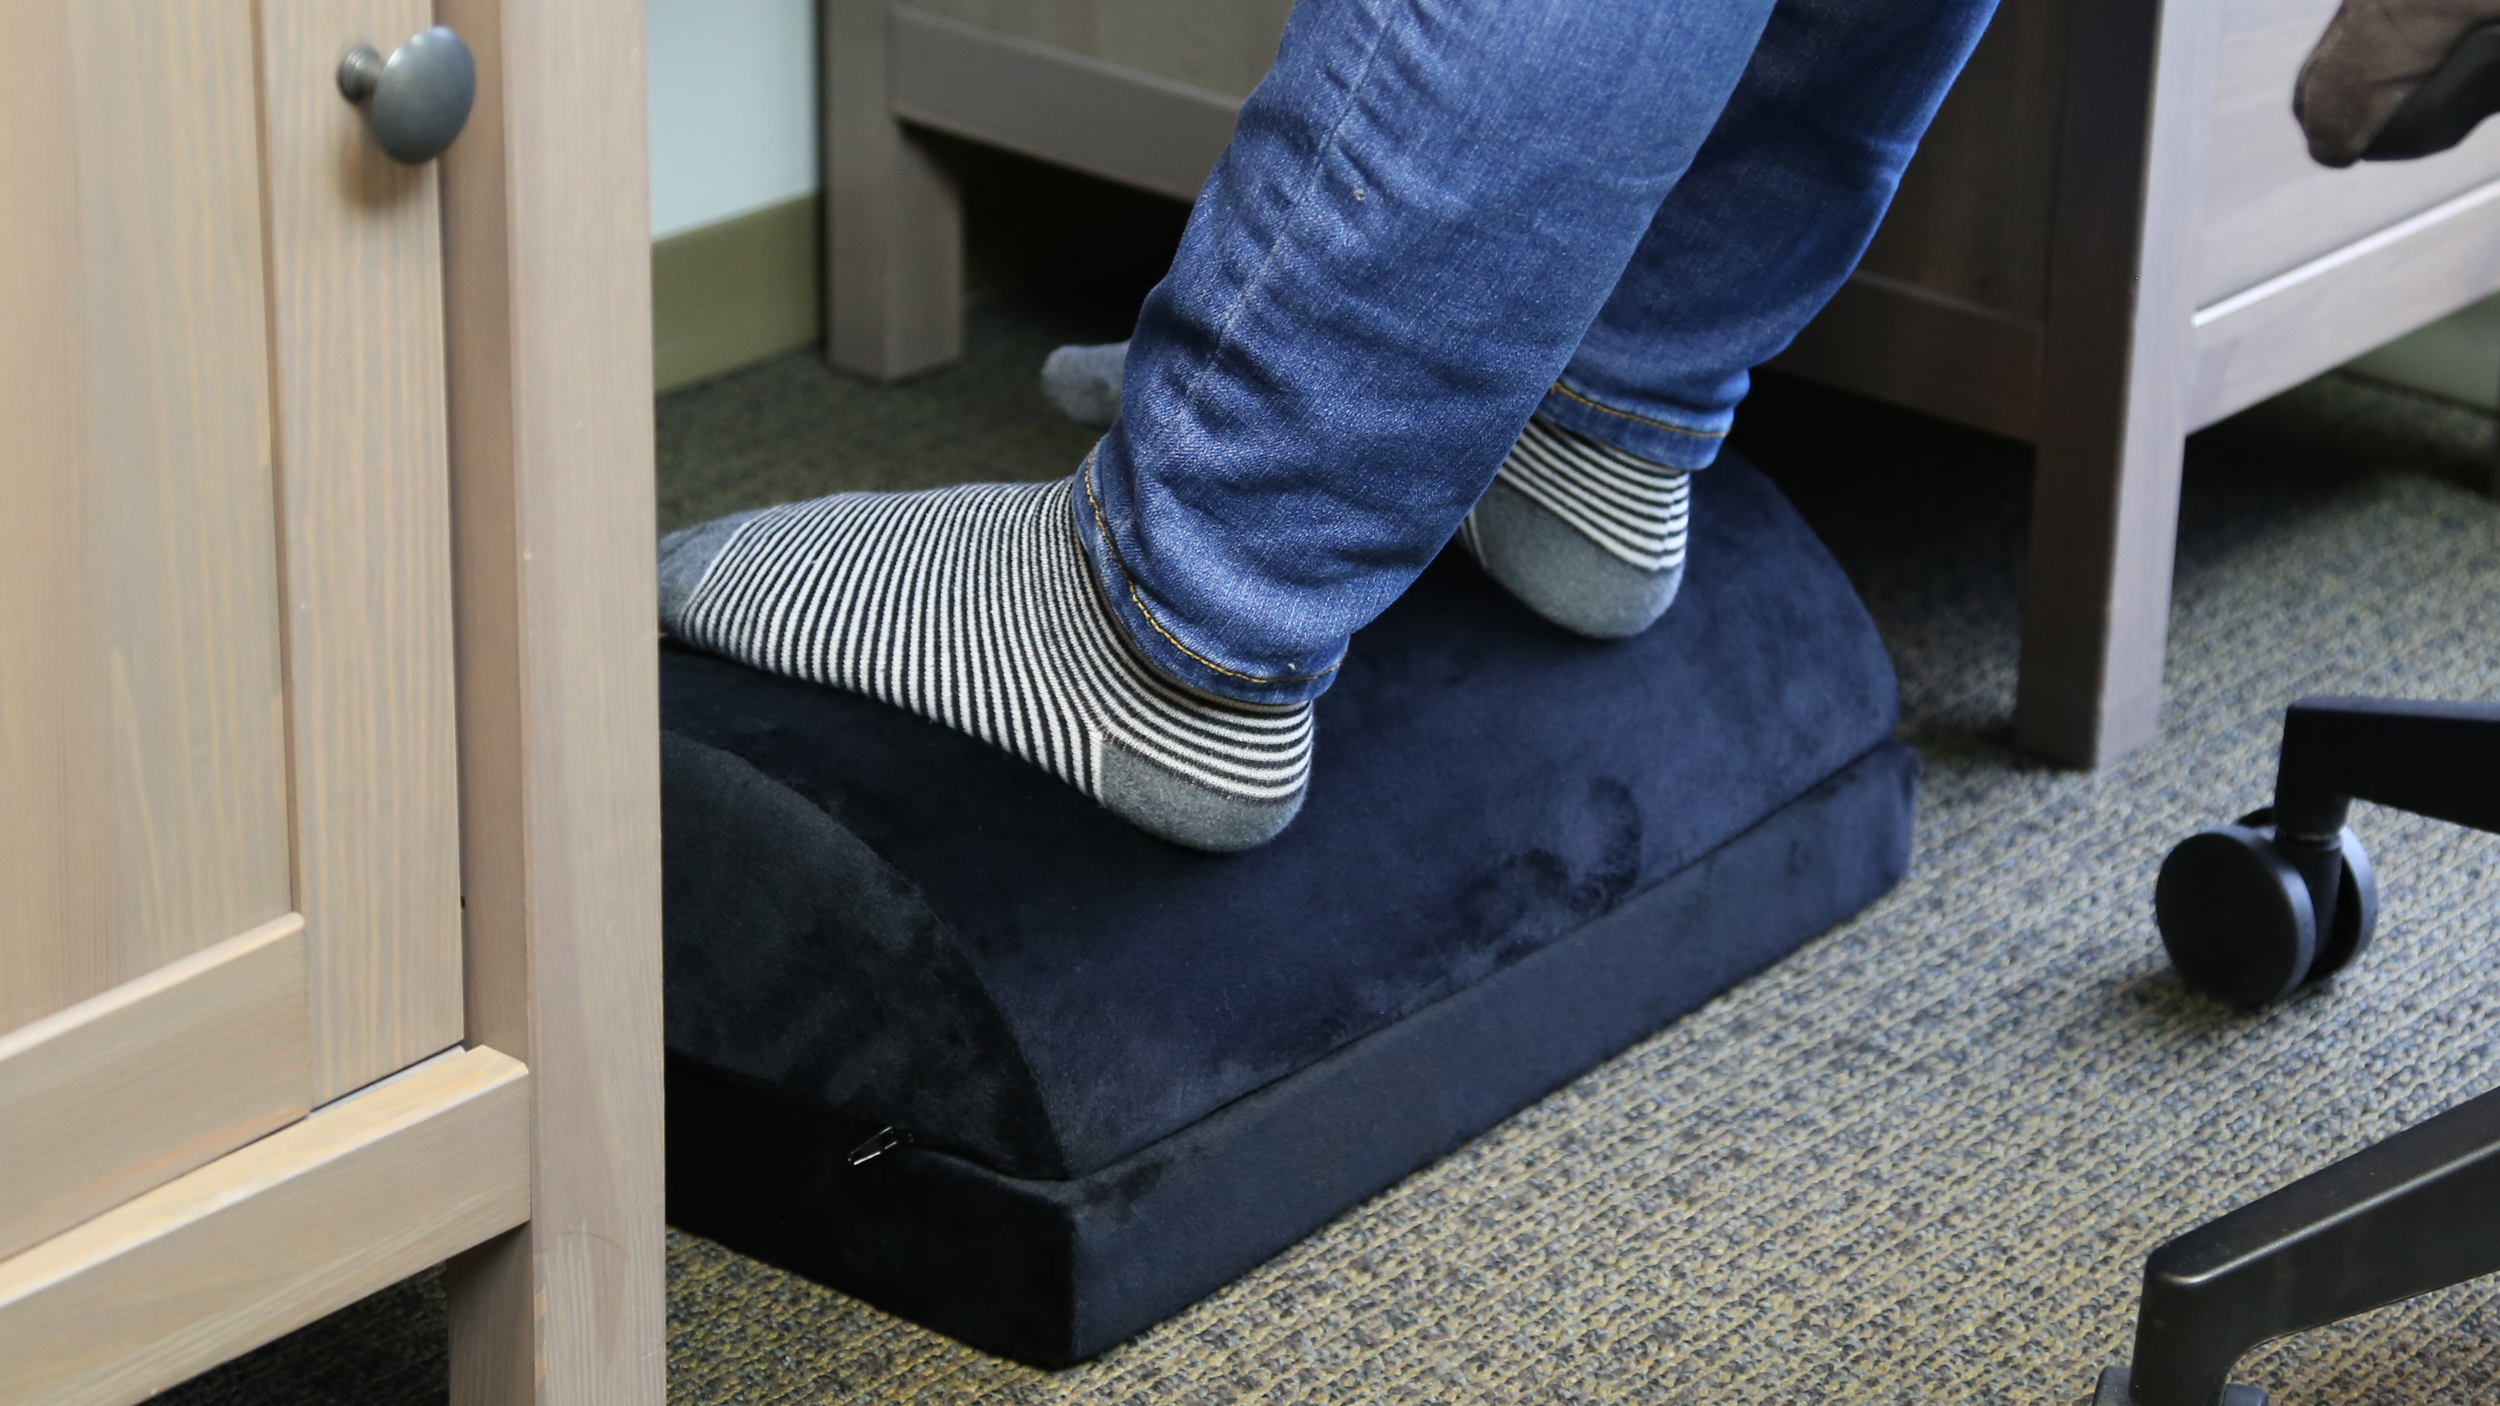 ComfiLife Foot Rest for Under Desk at Work – Adjustable Memory